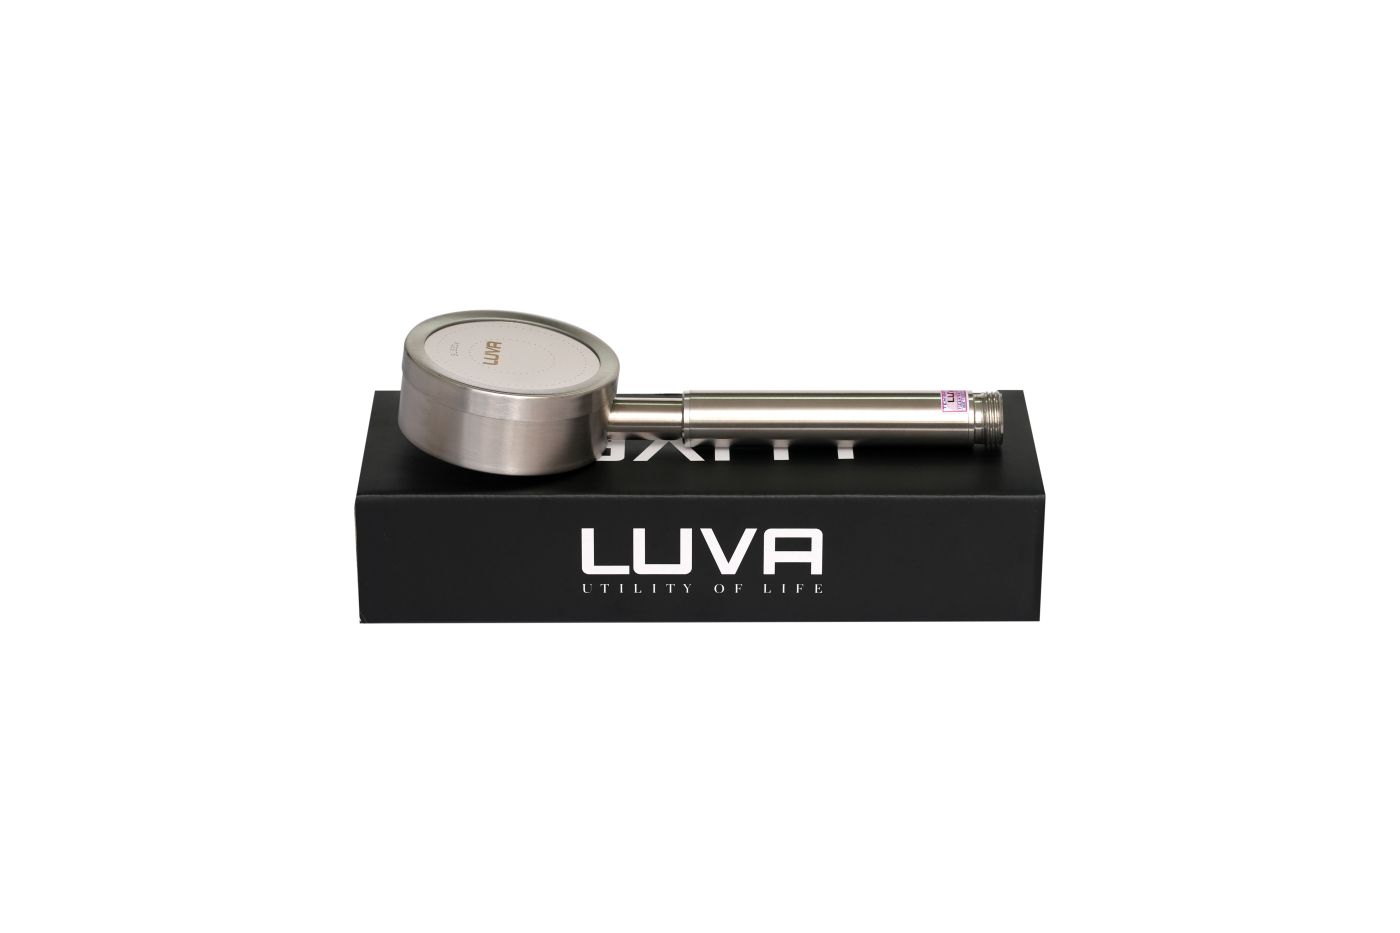 Vòi sen tăng áp LUVA VS5, inox 304, phun xoắn ốc, BH 1 năm, đổi lỗi 100 ngày